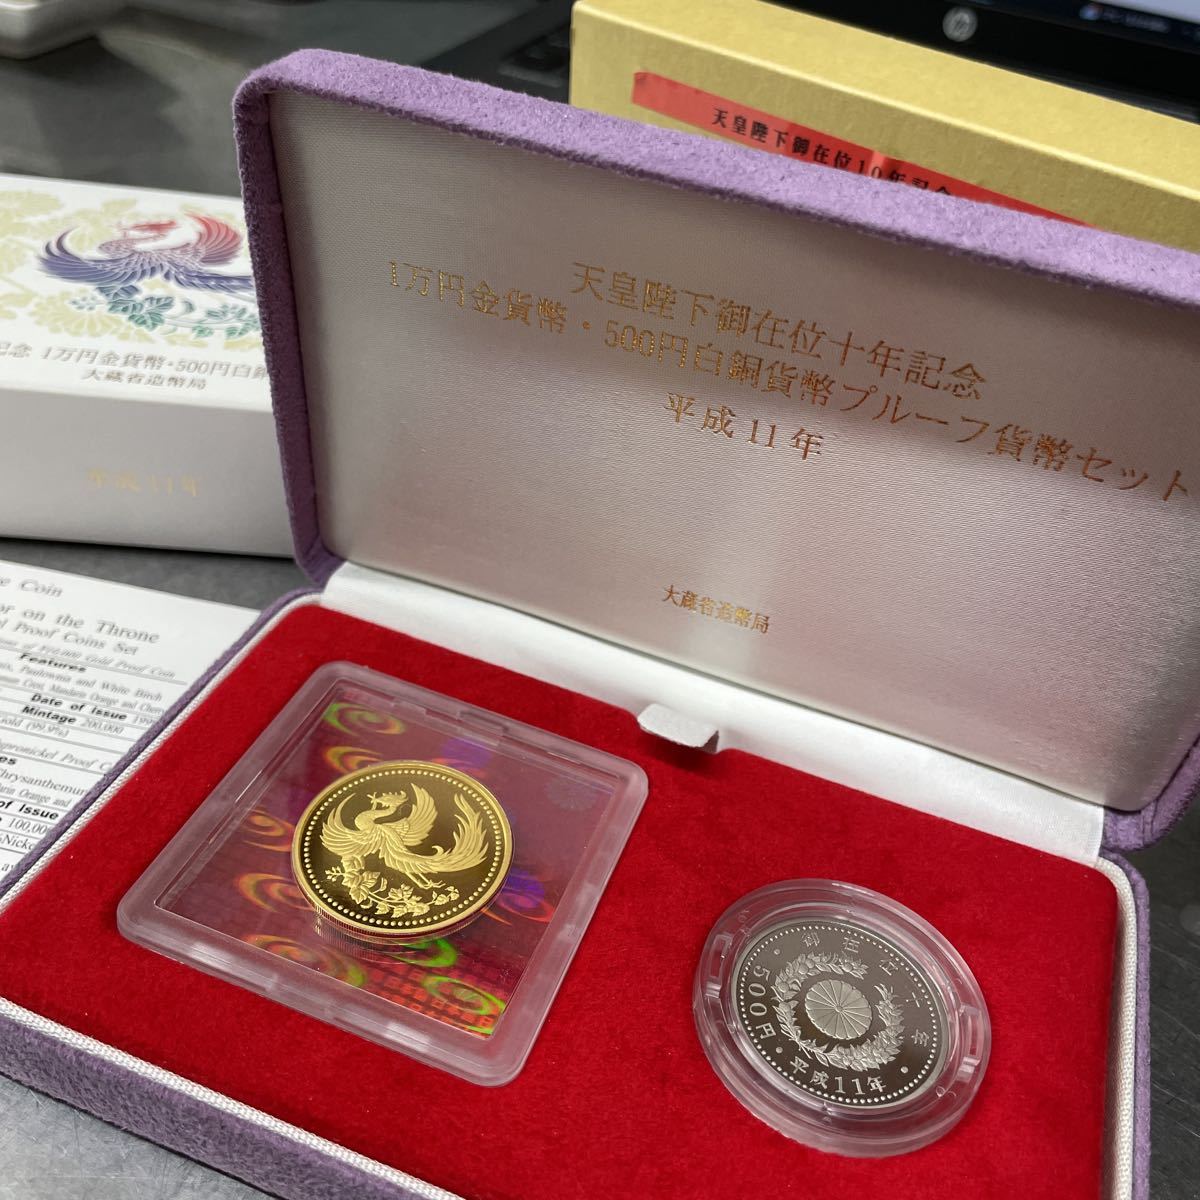 天皇陛下御在位10周年記念 1万円金貨幣 500円白銅貨幣 プルーフ貨幣 